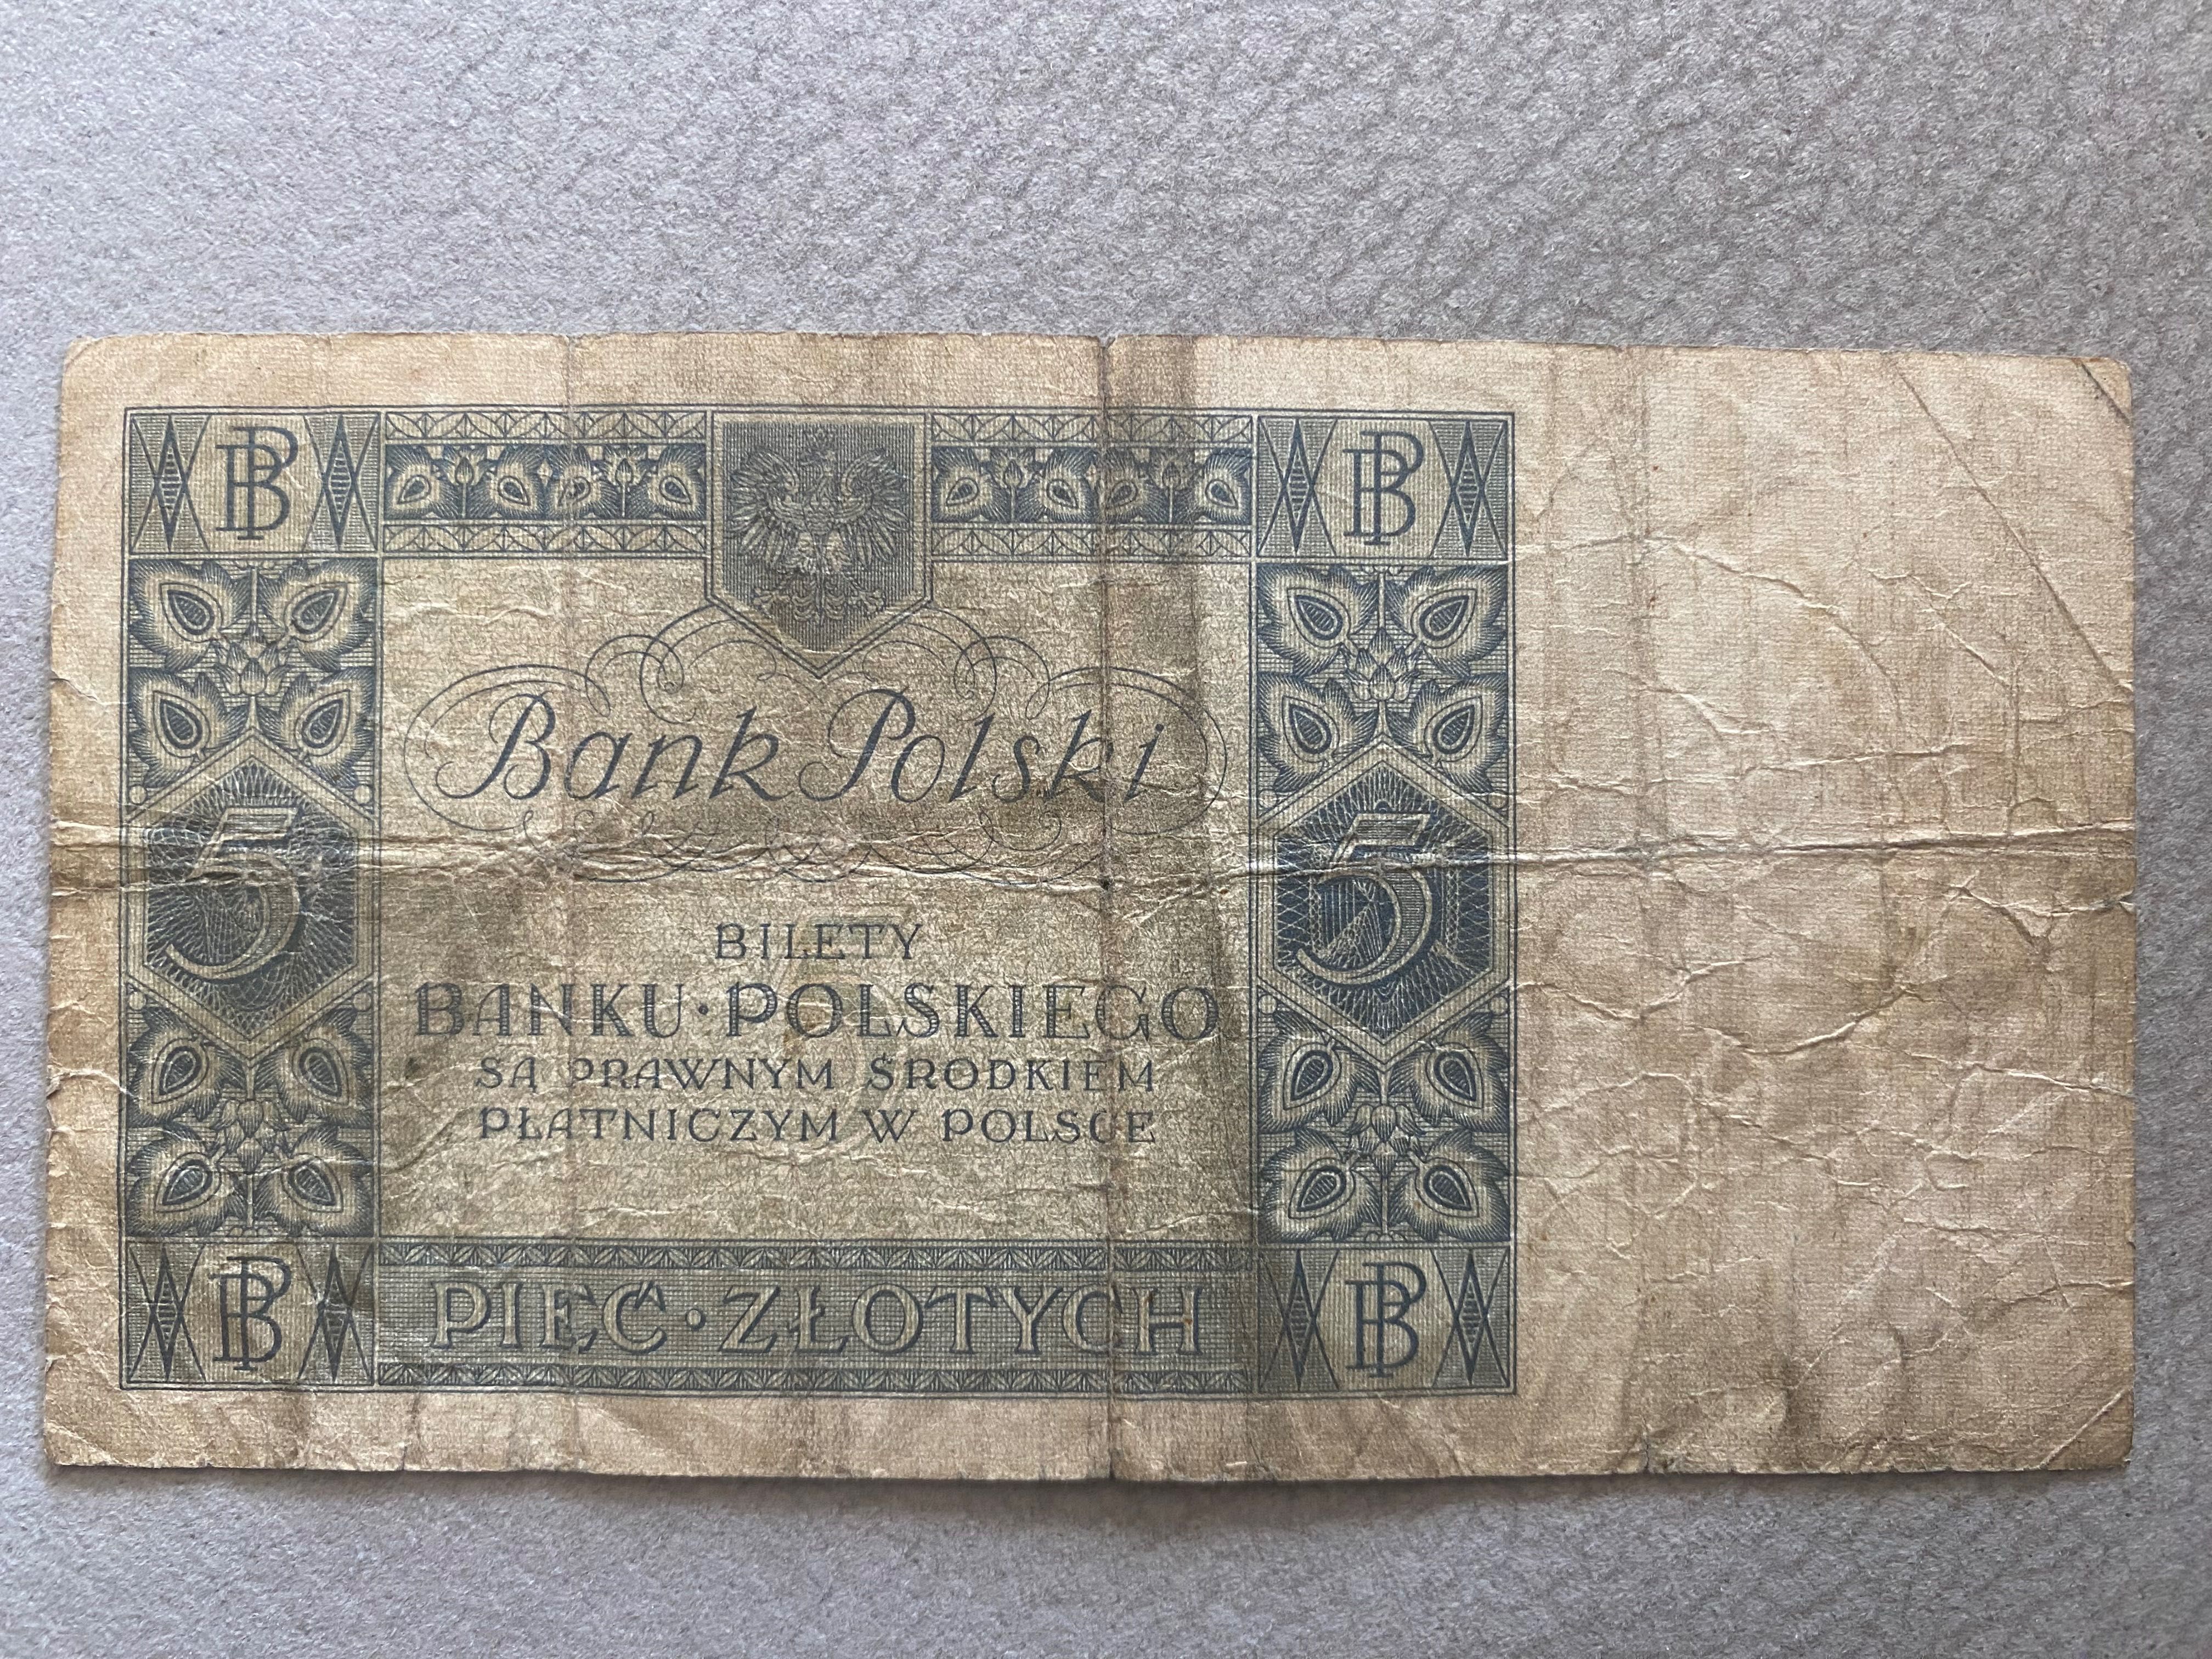 Banknot 5zł z 1930 roku